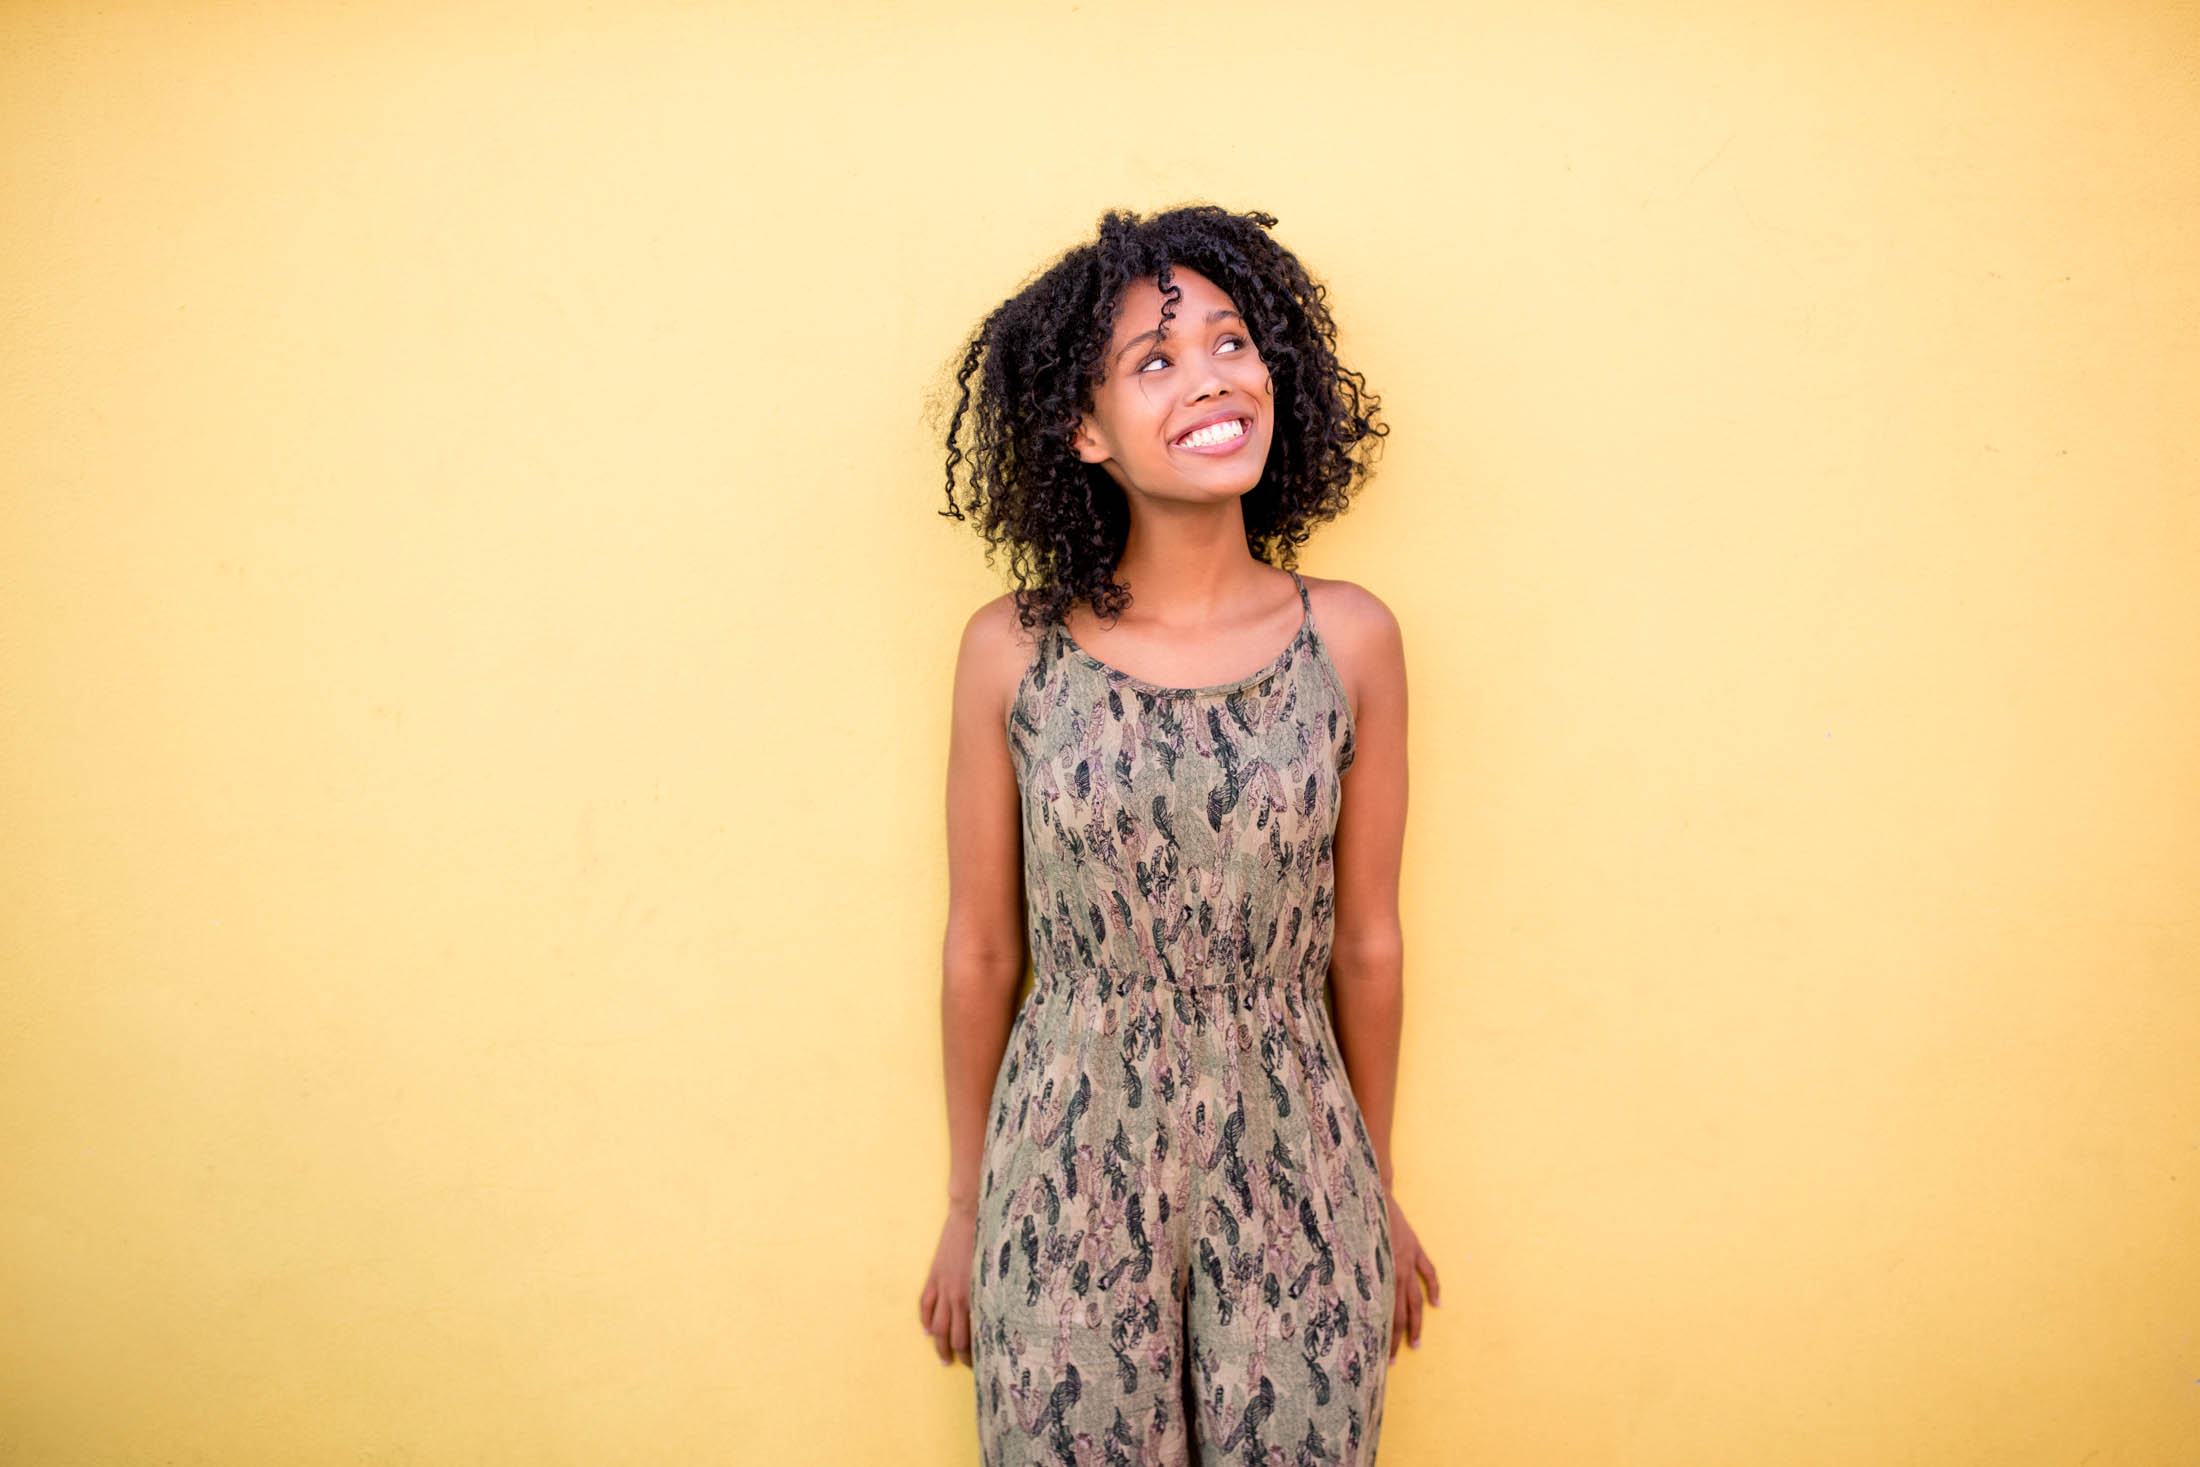 Eine fröhliche junge Frau mit lockigem Haar und einem Tarnkleid, die vor einem leuchtend gelben Hintergrund steht, lächelt und nach oben blickt. © Fotografie Tomas Rodriguez